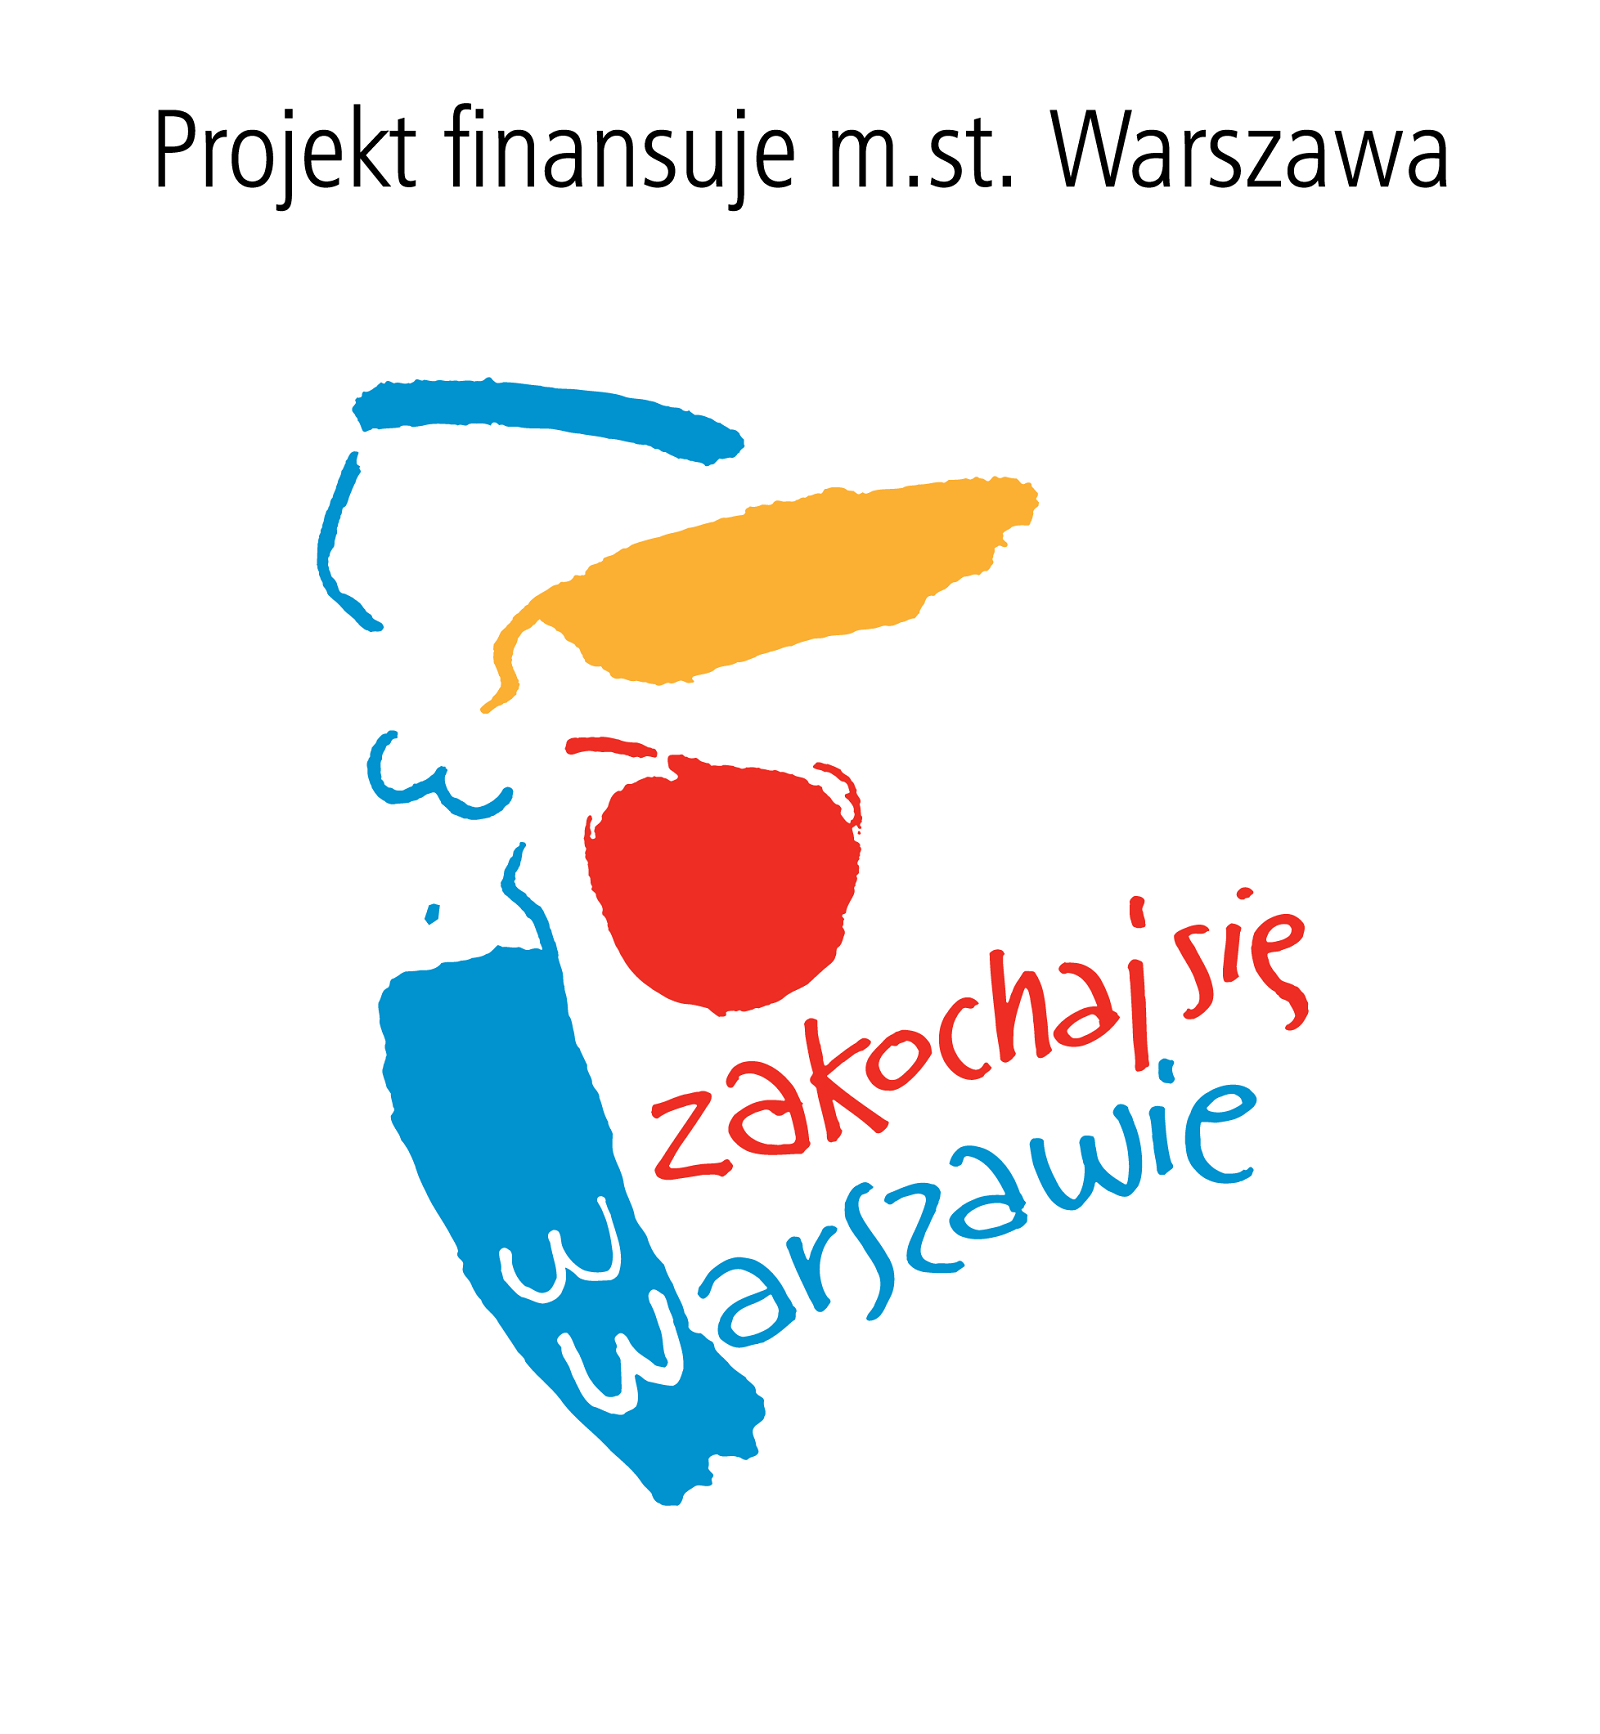 logo z syrenką warszawską - projekt finansuje m.st. Warszawa